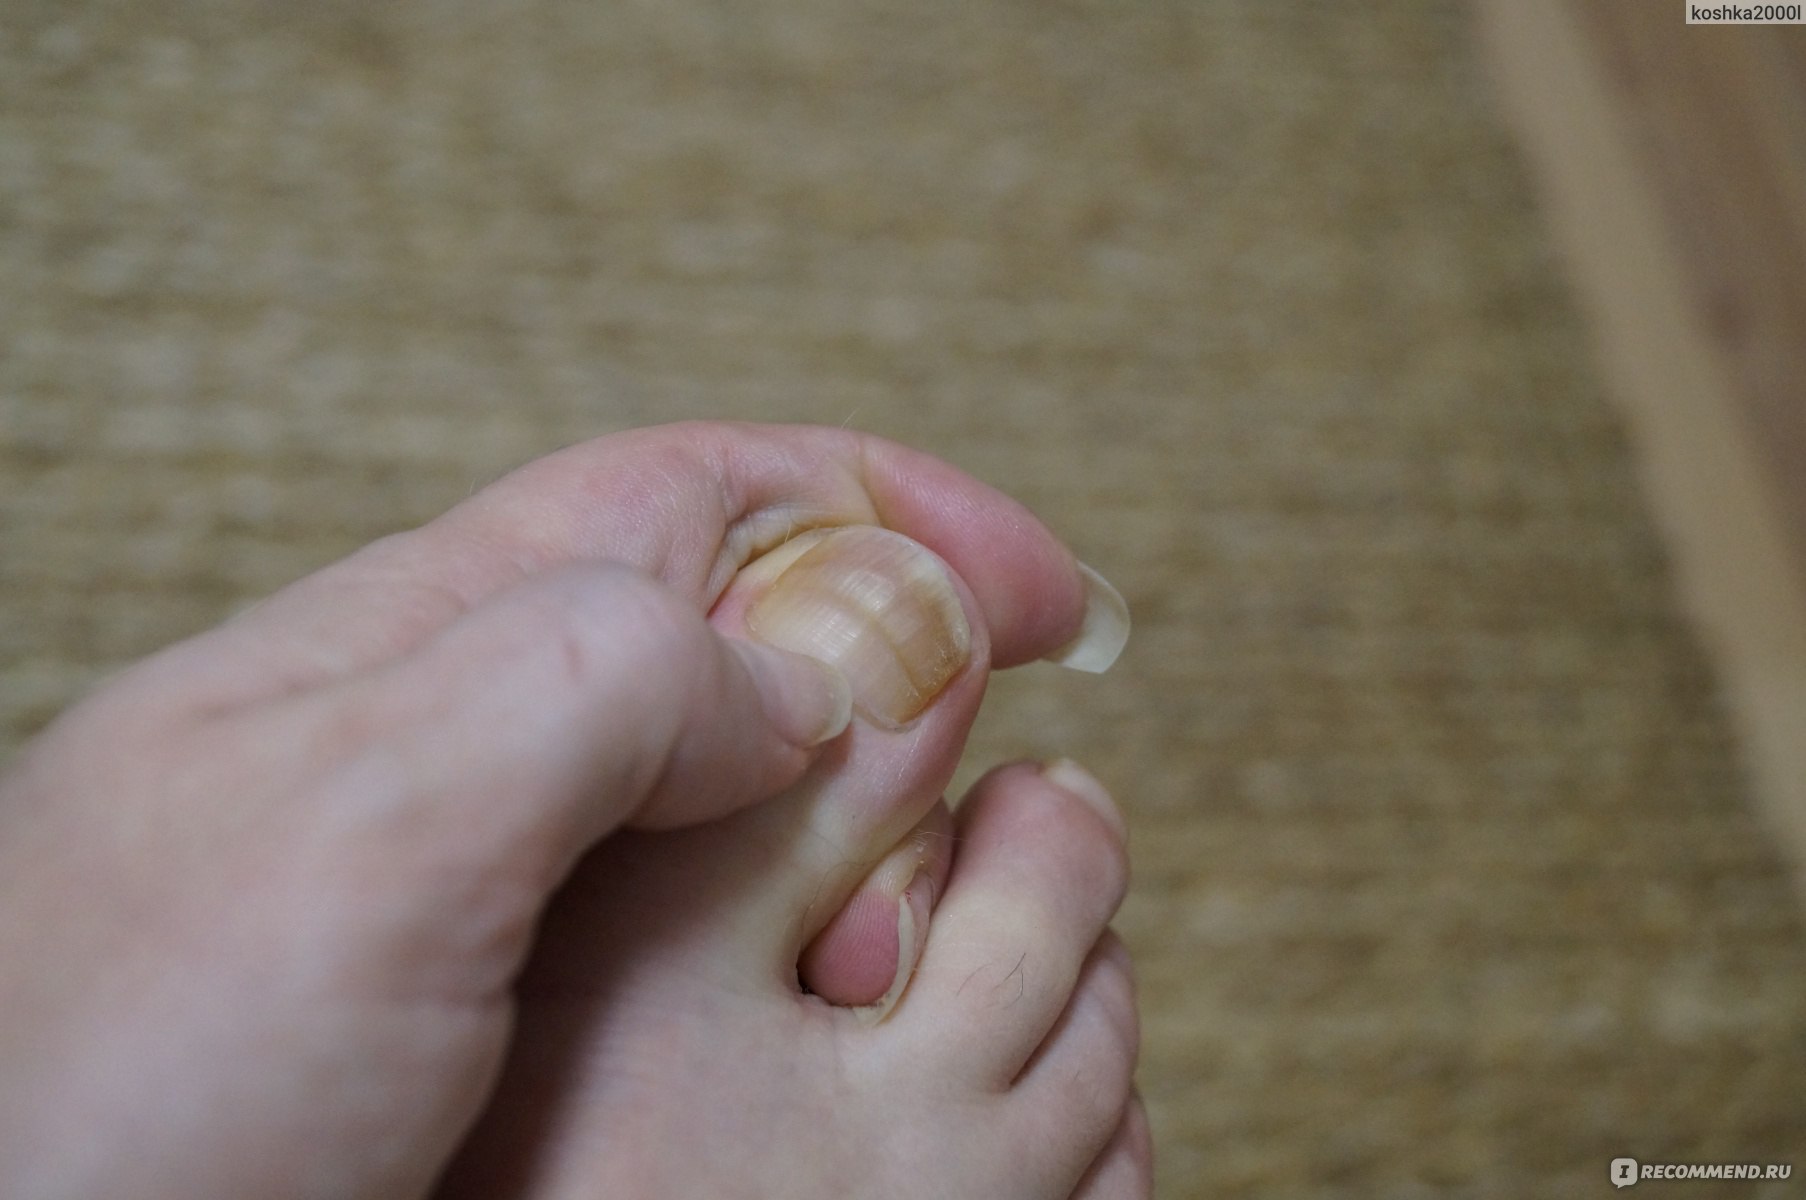 Ушиб ногтя: как и что делать, если на ноге, руке, почернел после травмы, отбитый, с сильным ушибом посинел